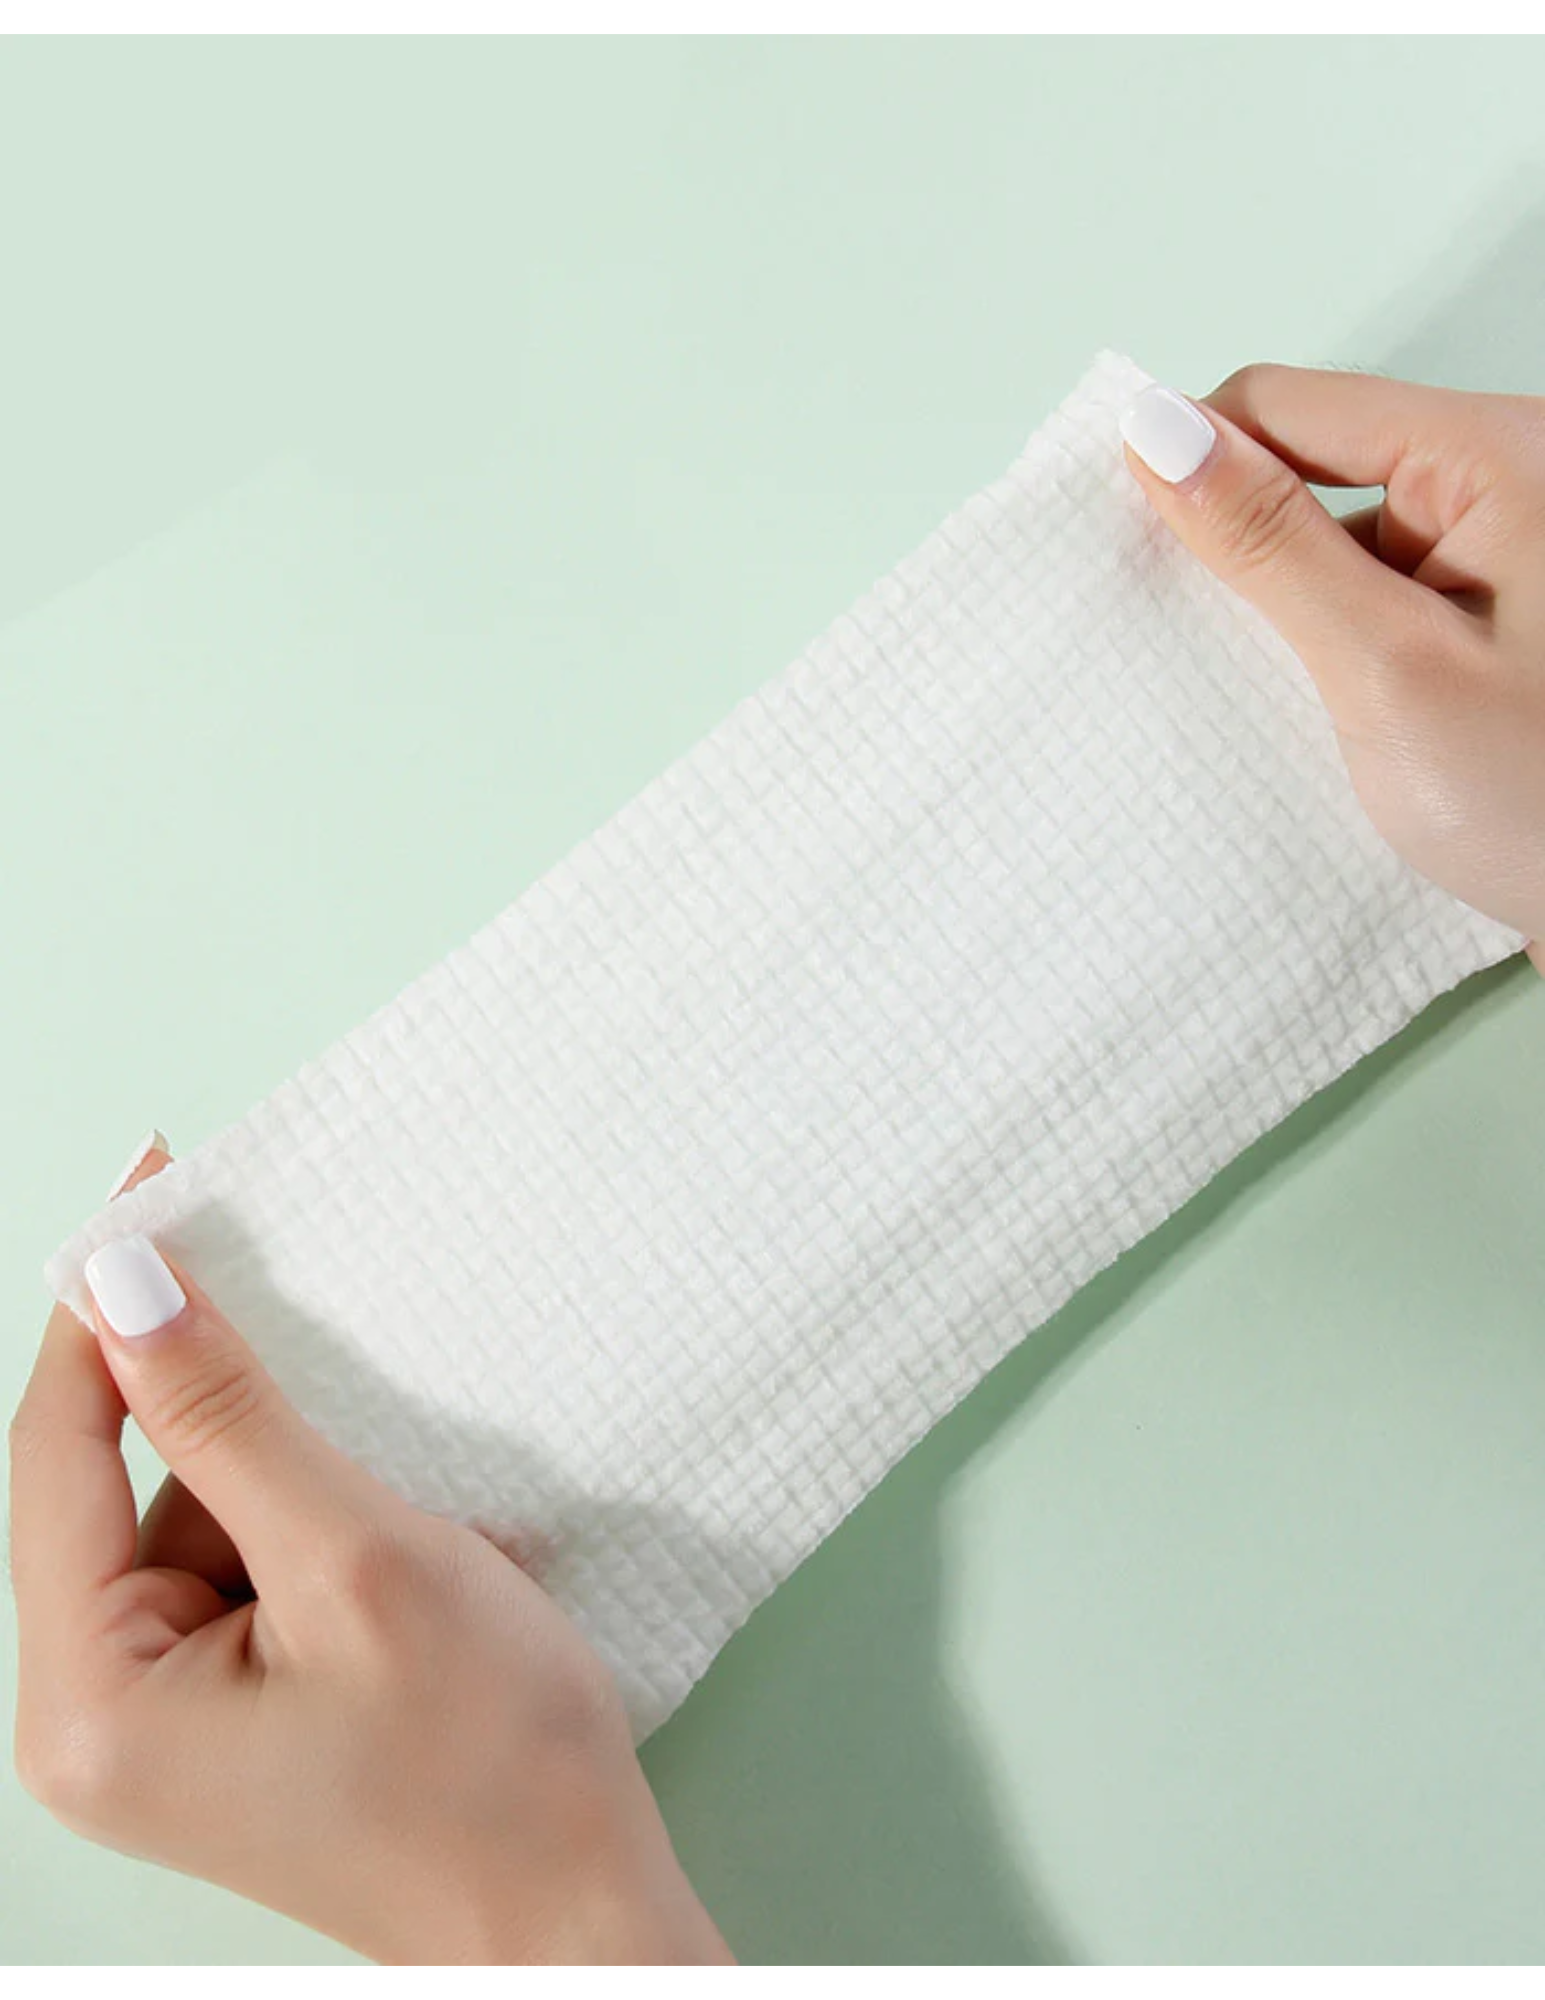  AMORTALS Disposable Cotton Facial Towel  - Unique Bunny